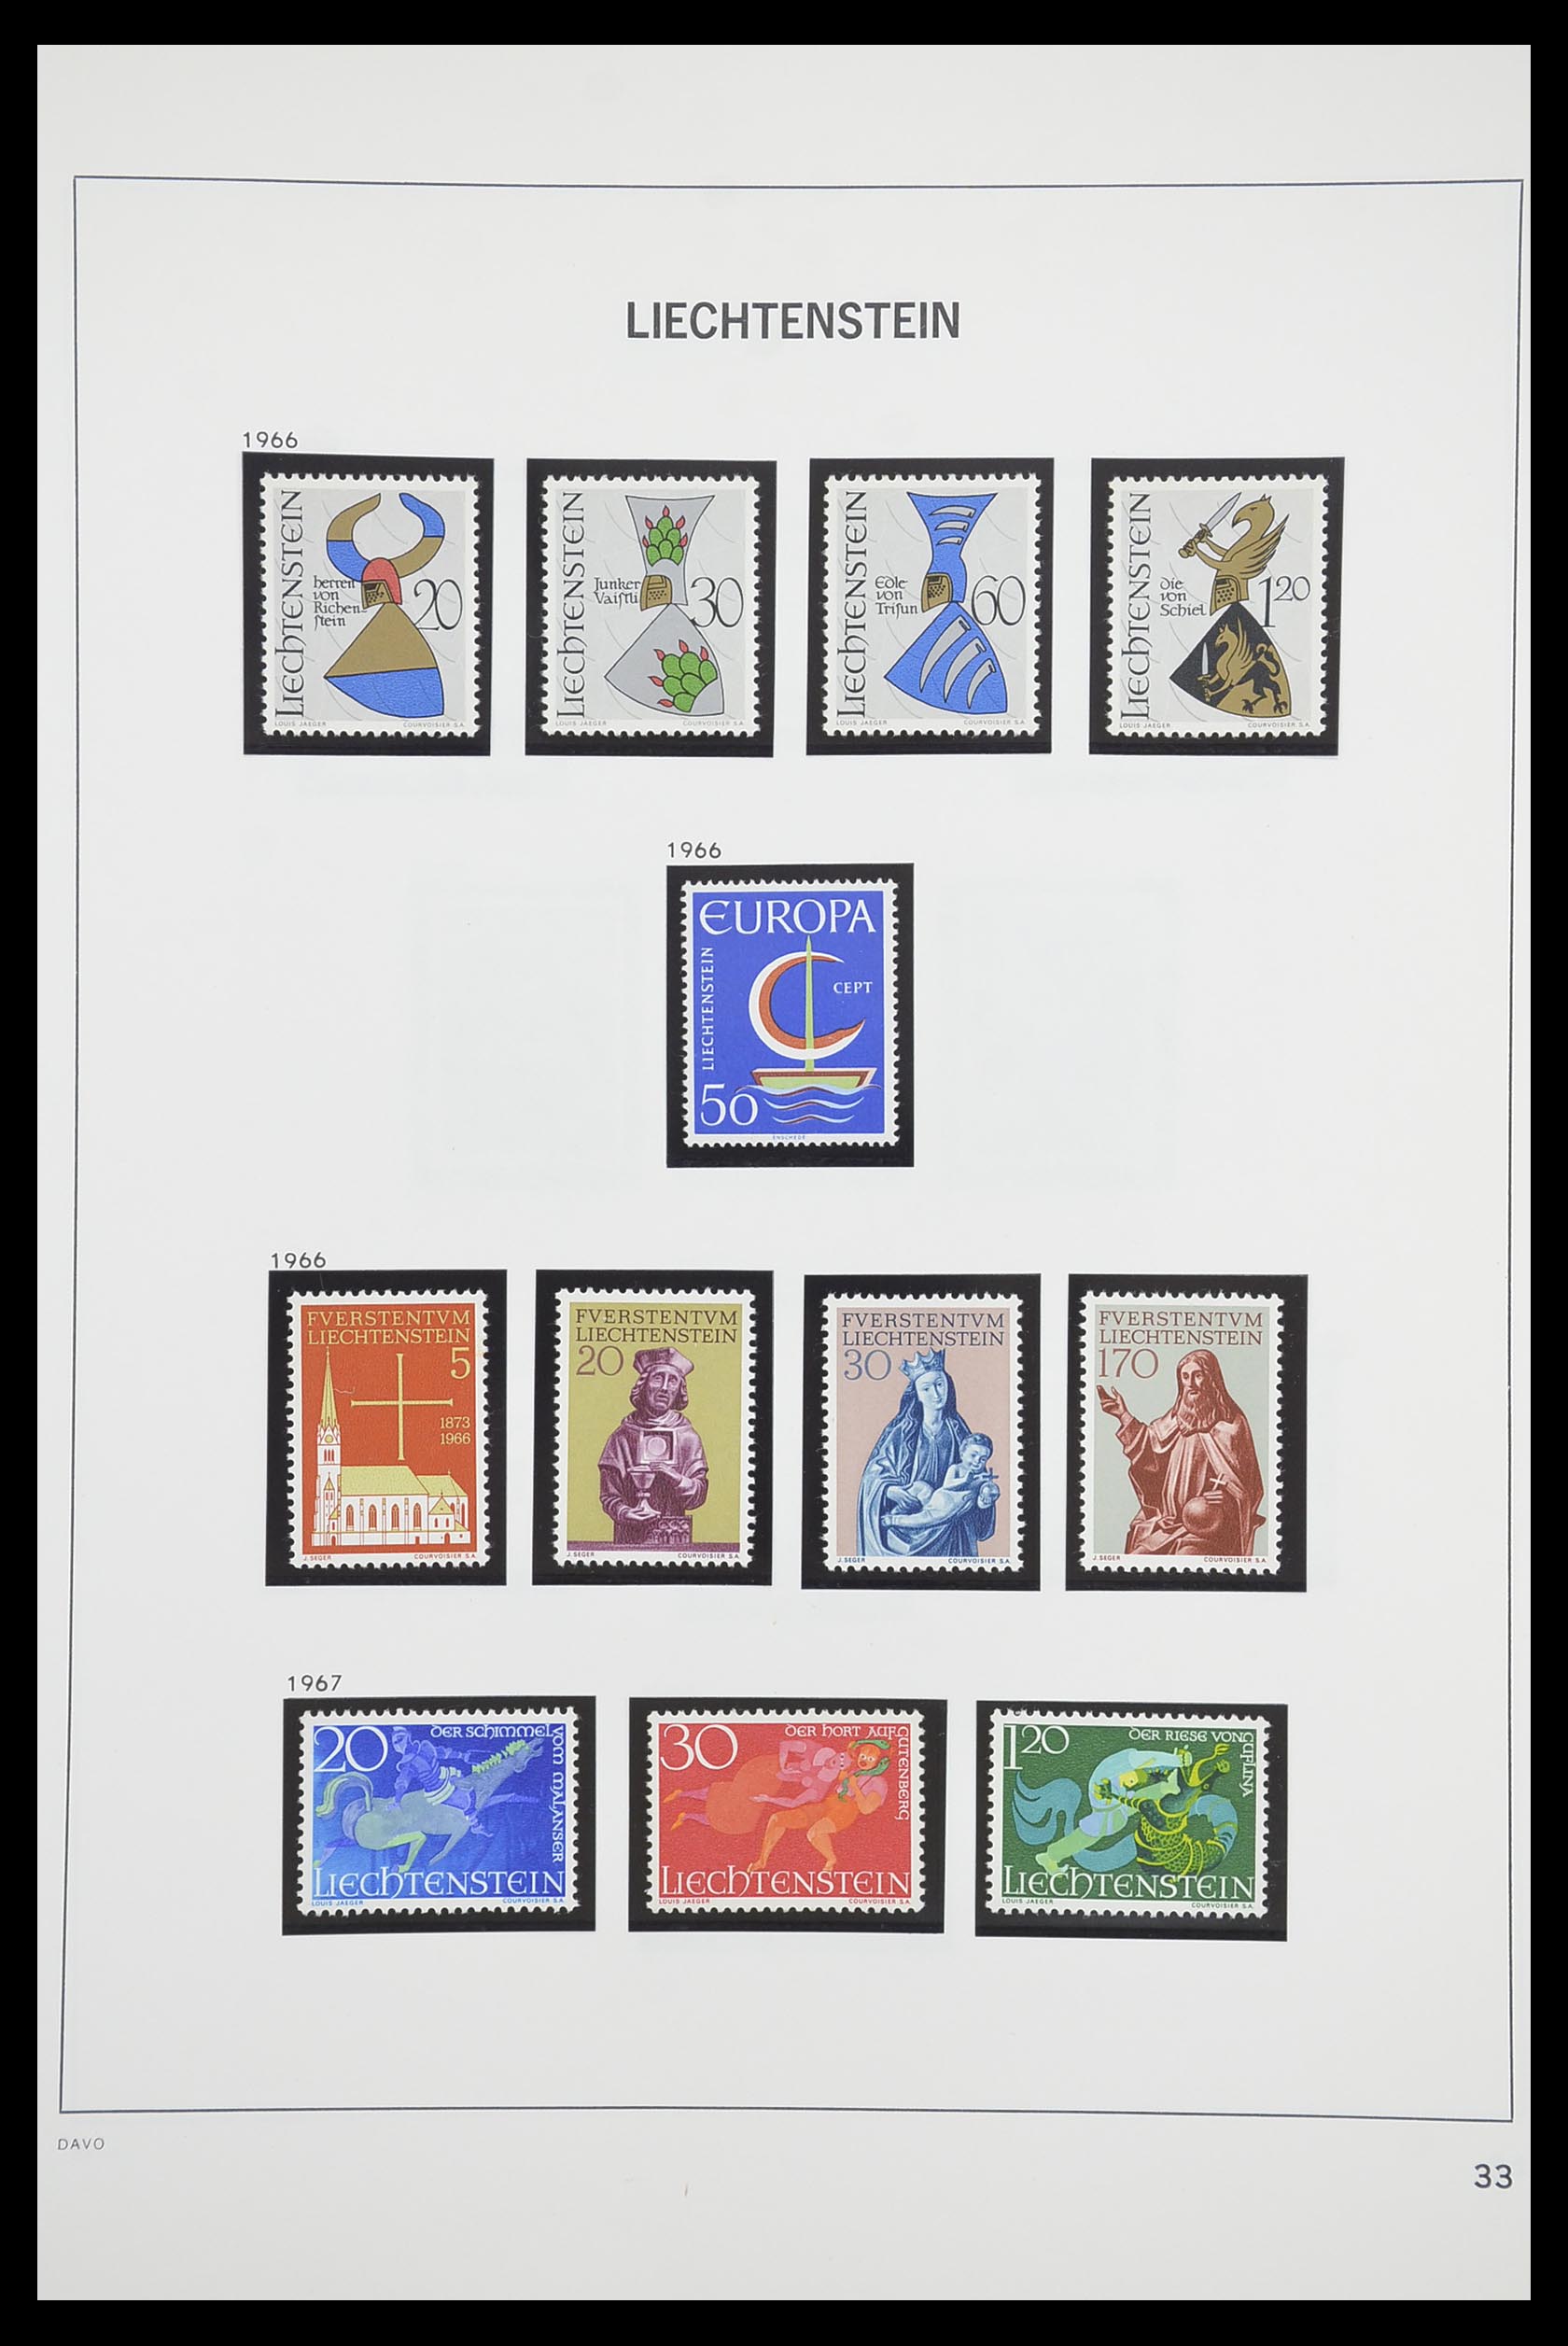 33890 034 - Stamp collection 33890 Liechtenstein 1912-1986.